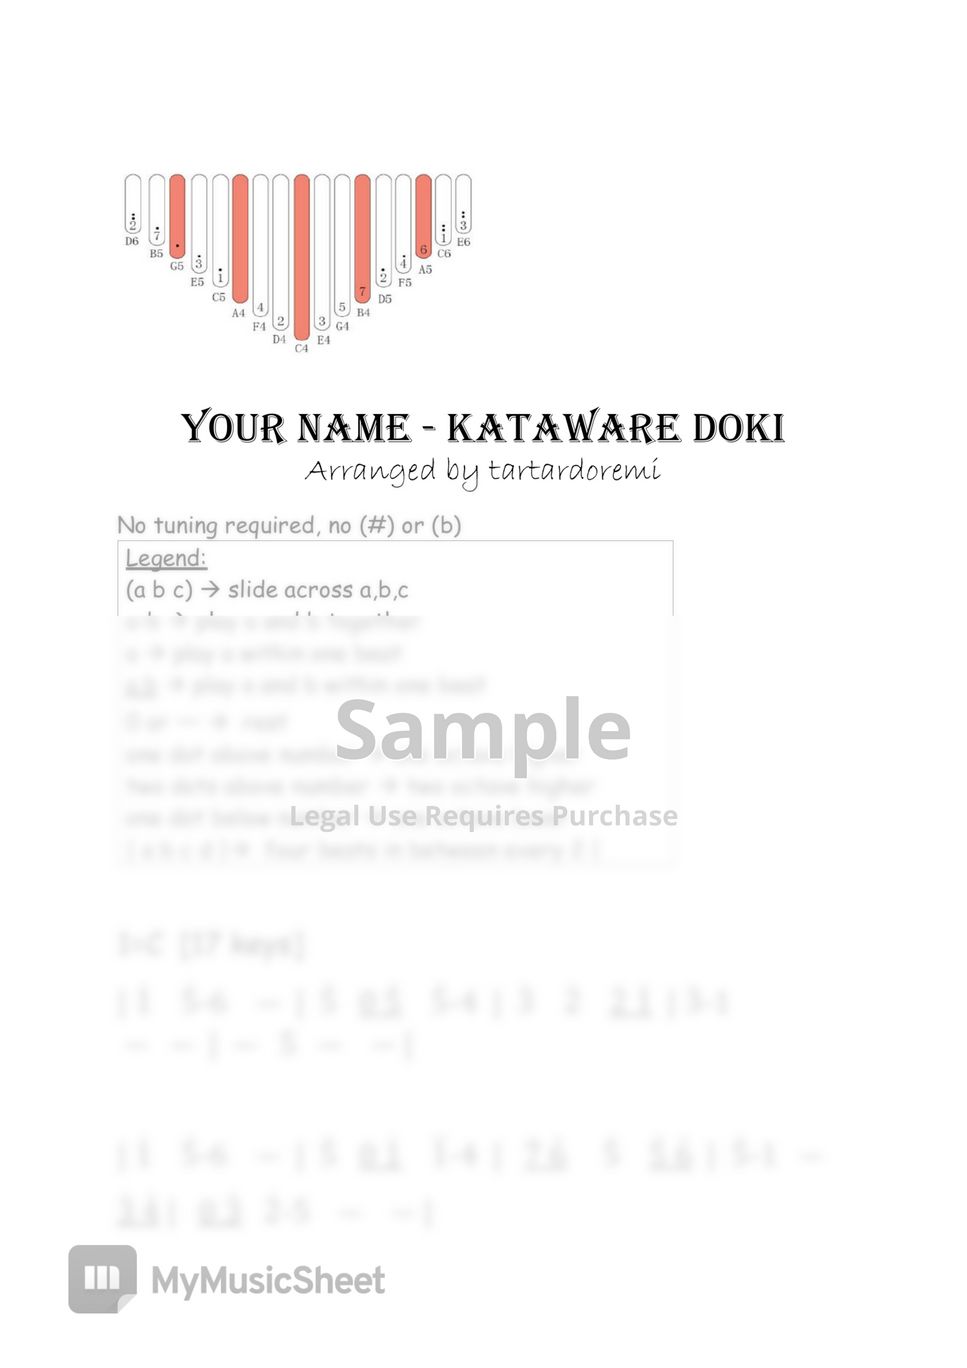 Your Name - Kataware Doki [Radwimps] by tartardoremi